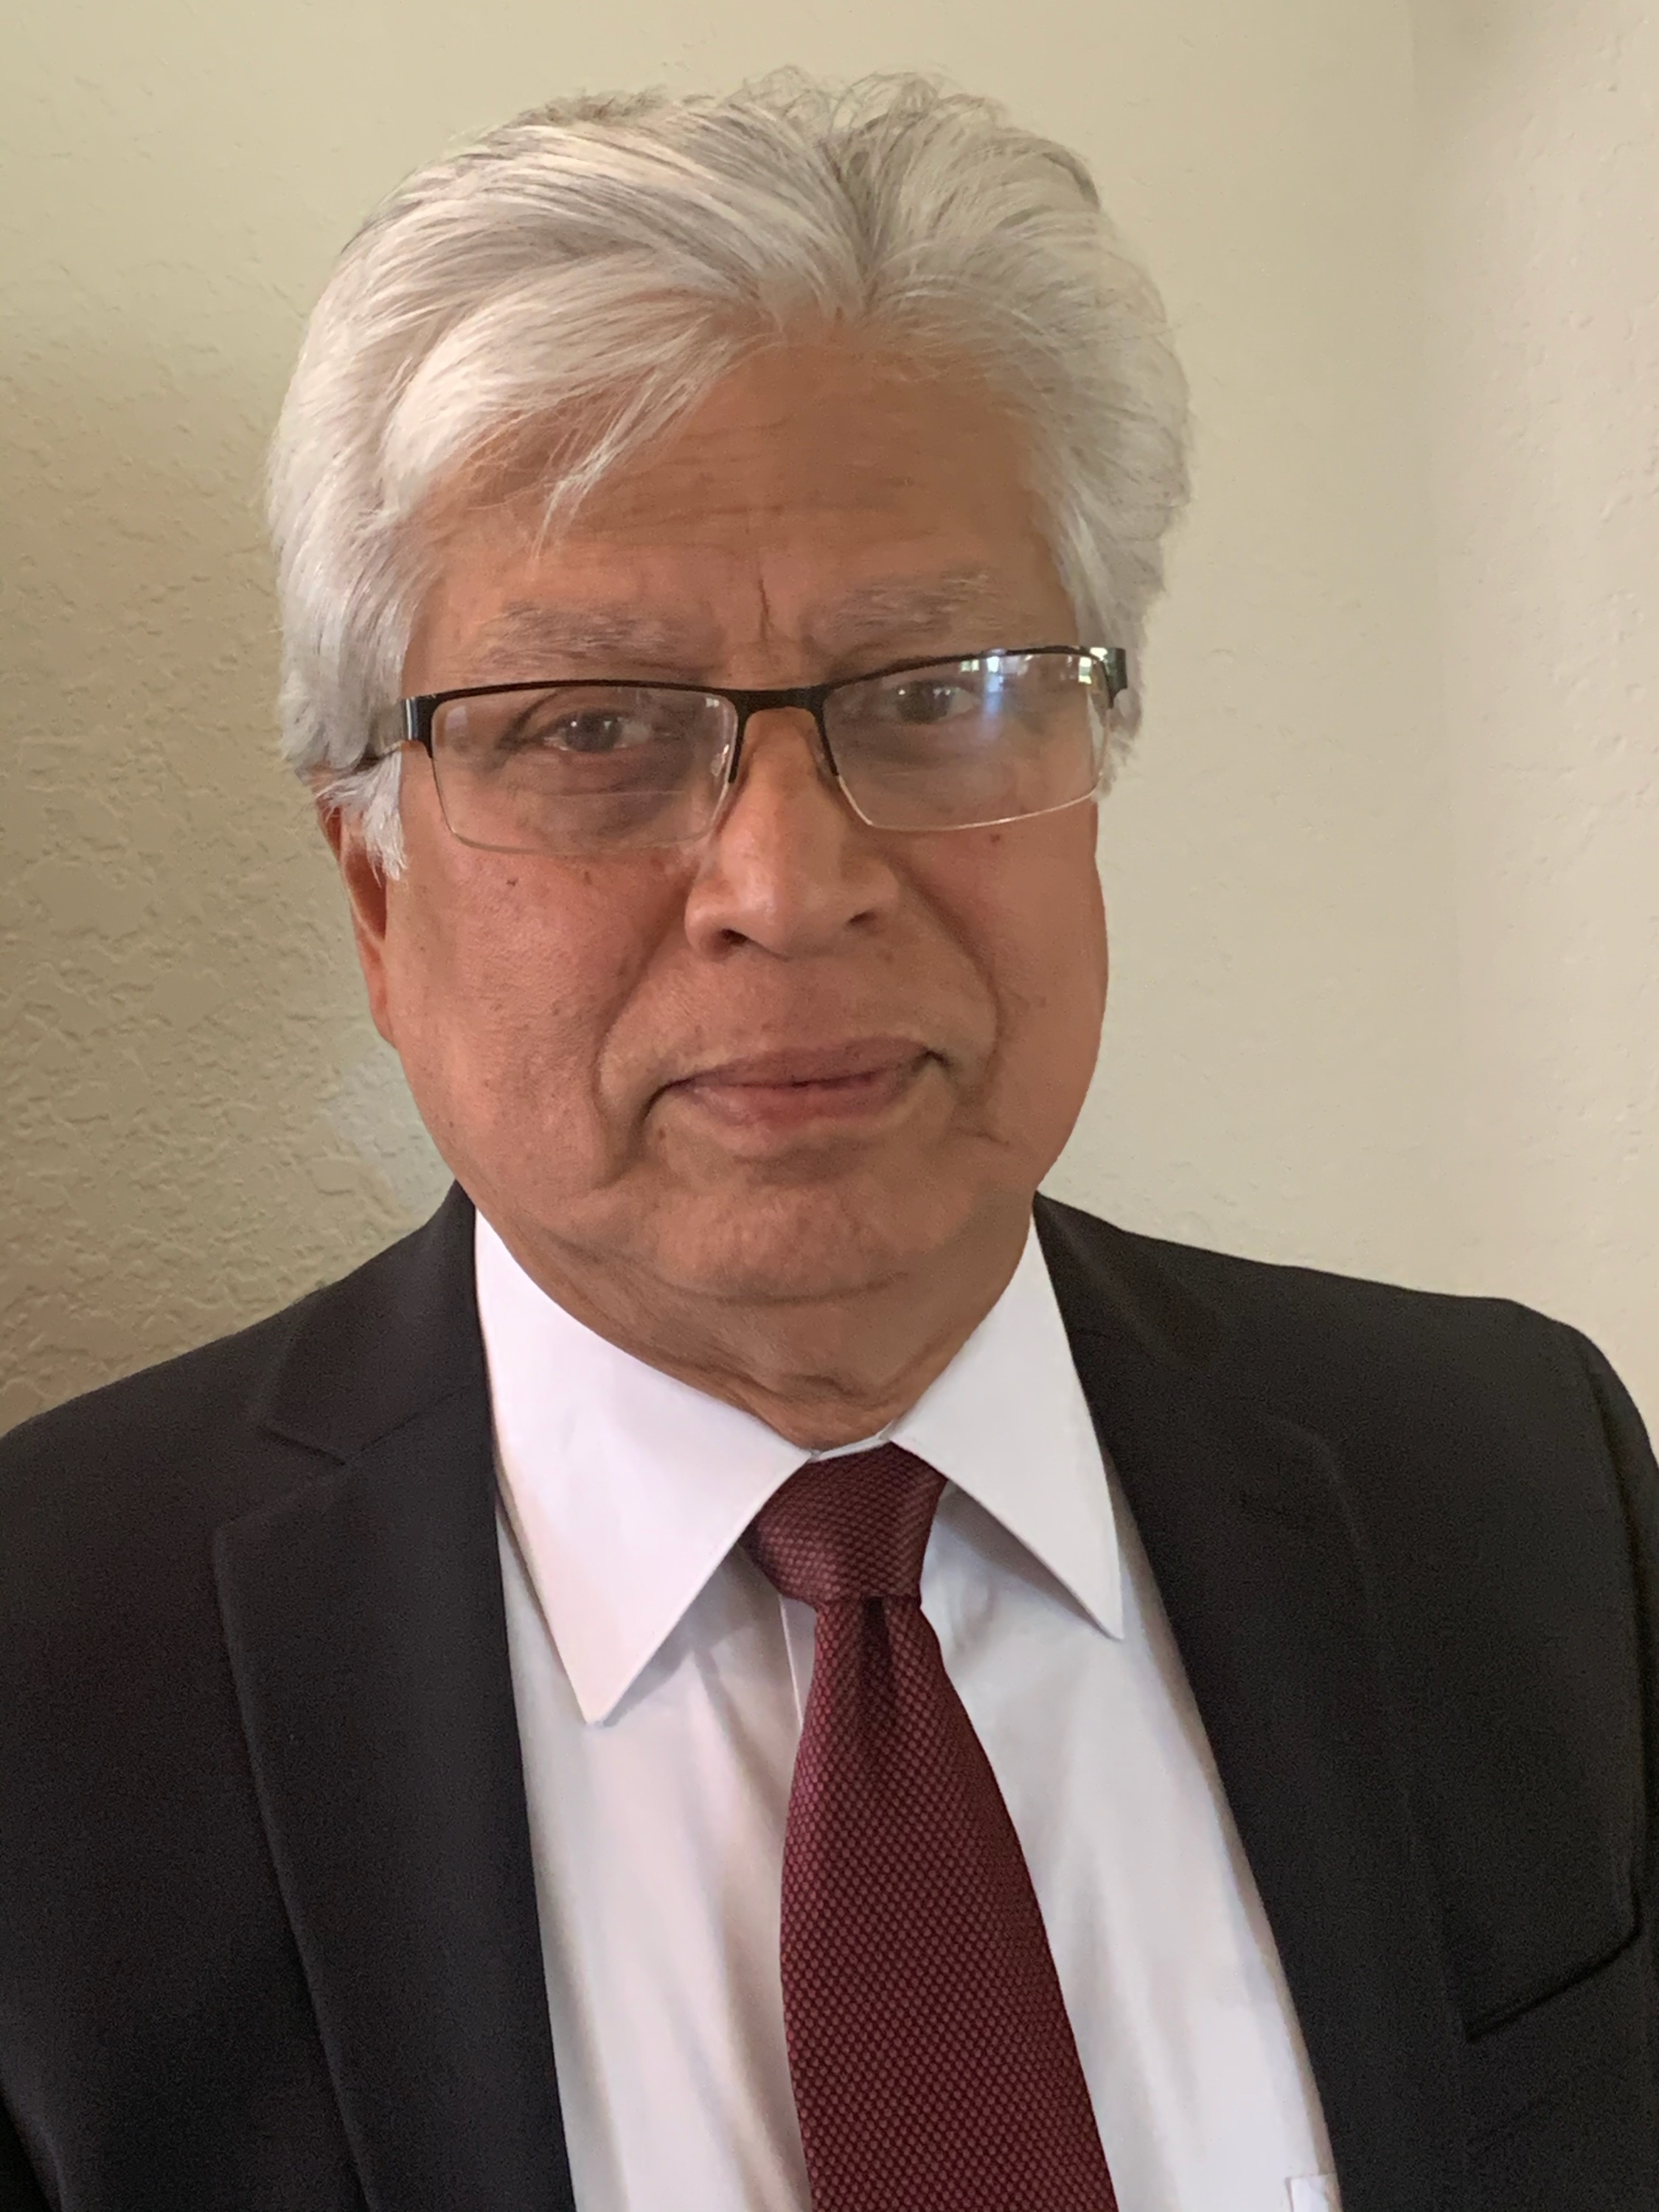 Arup Das、MD、PhD